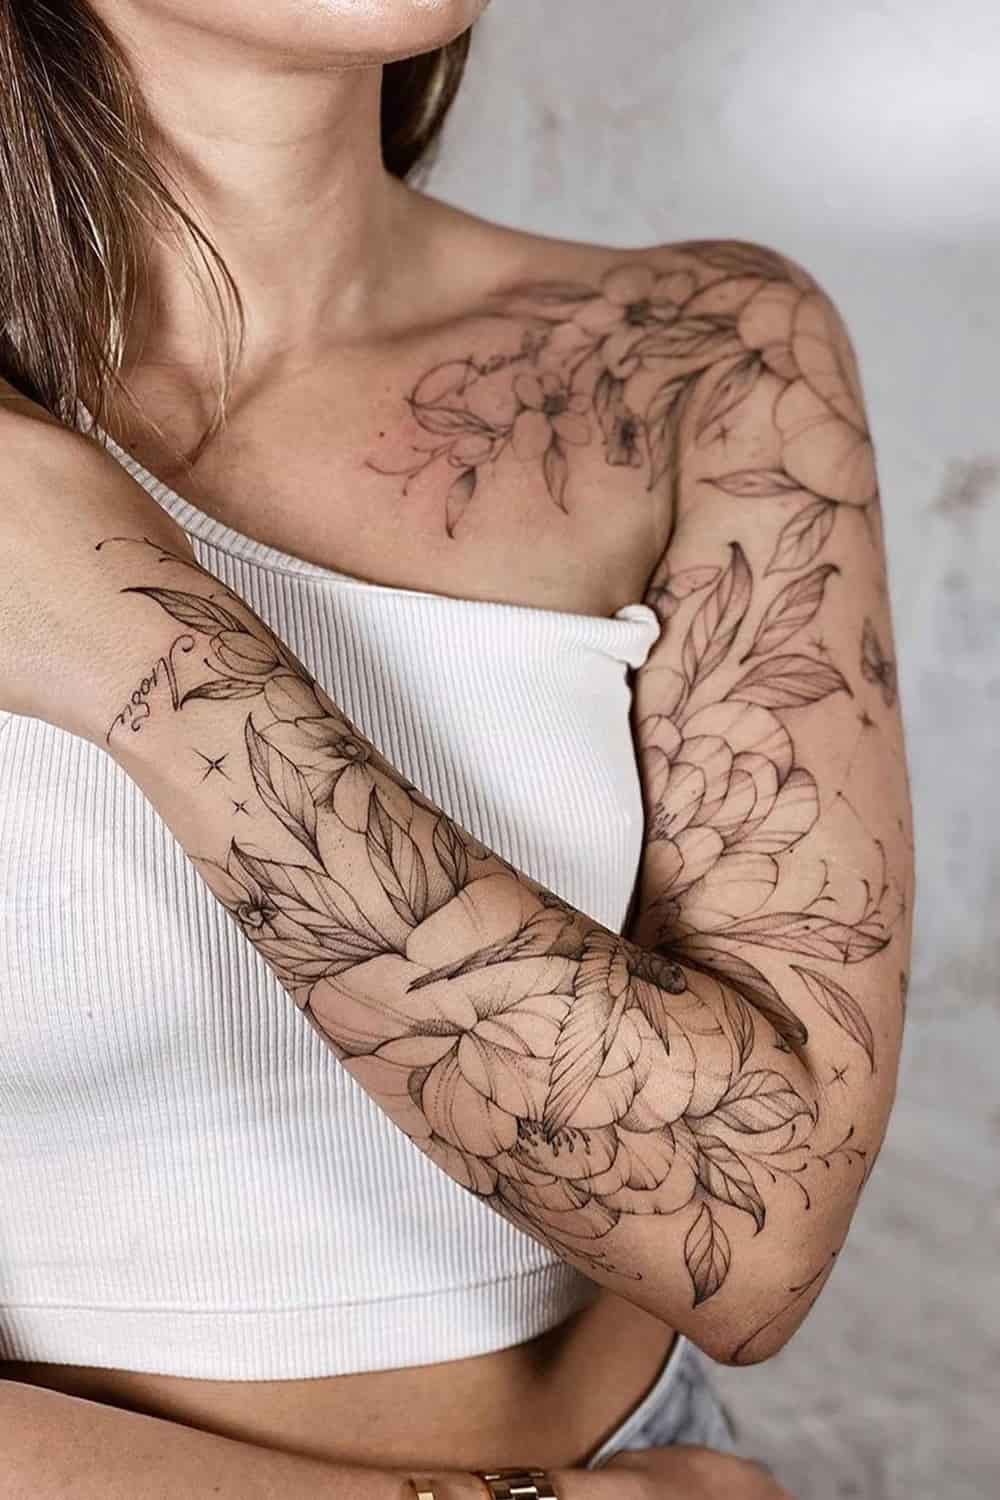 3-tatuagem-floral-no-braco-@olgatattooocean 